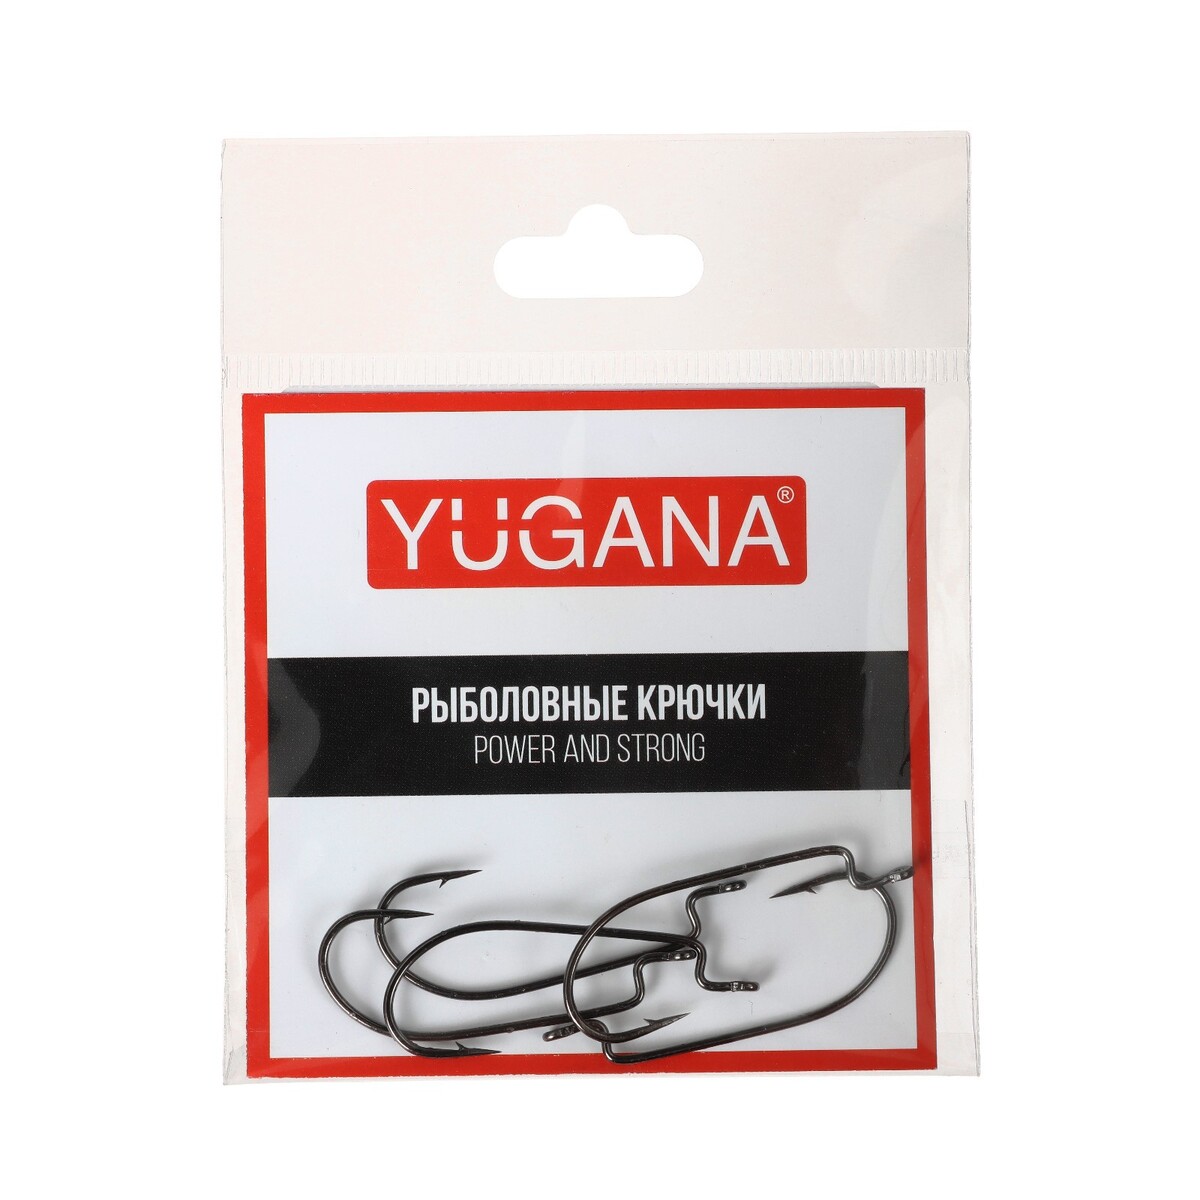   yugana o shaughnessy worm,   2, 5 